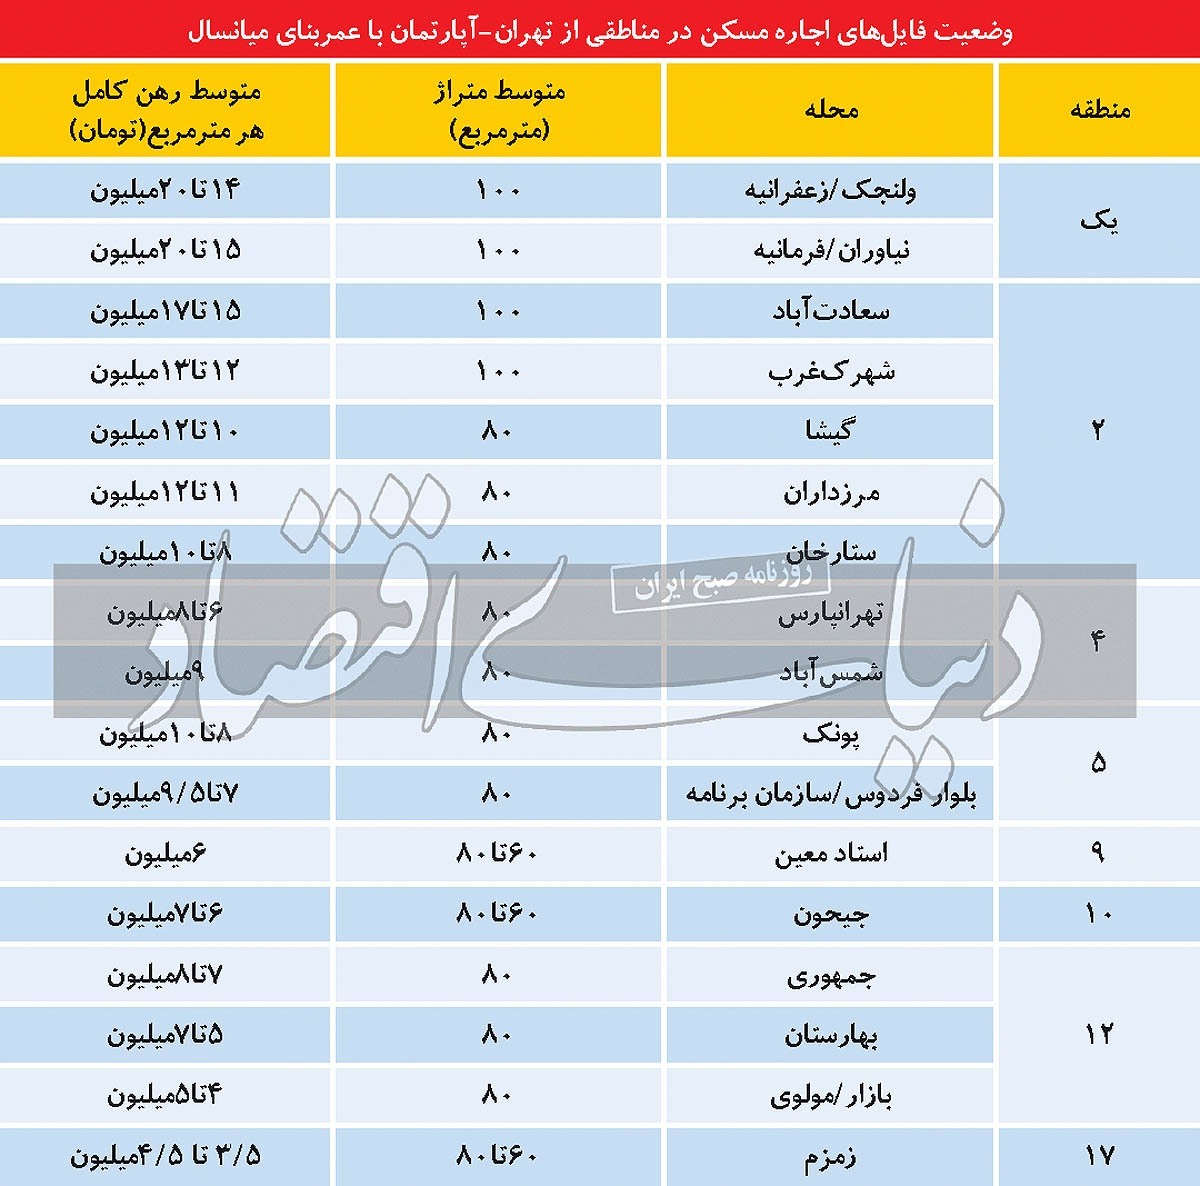 متوسط قیمت اجاره خانه در نقاط مختلف تهران